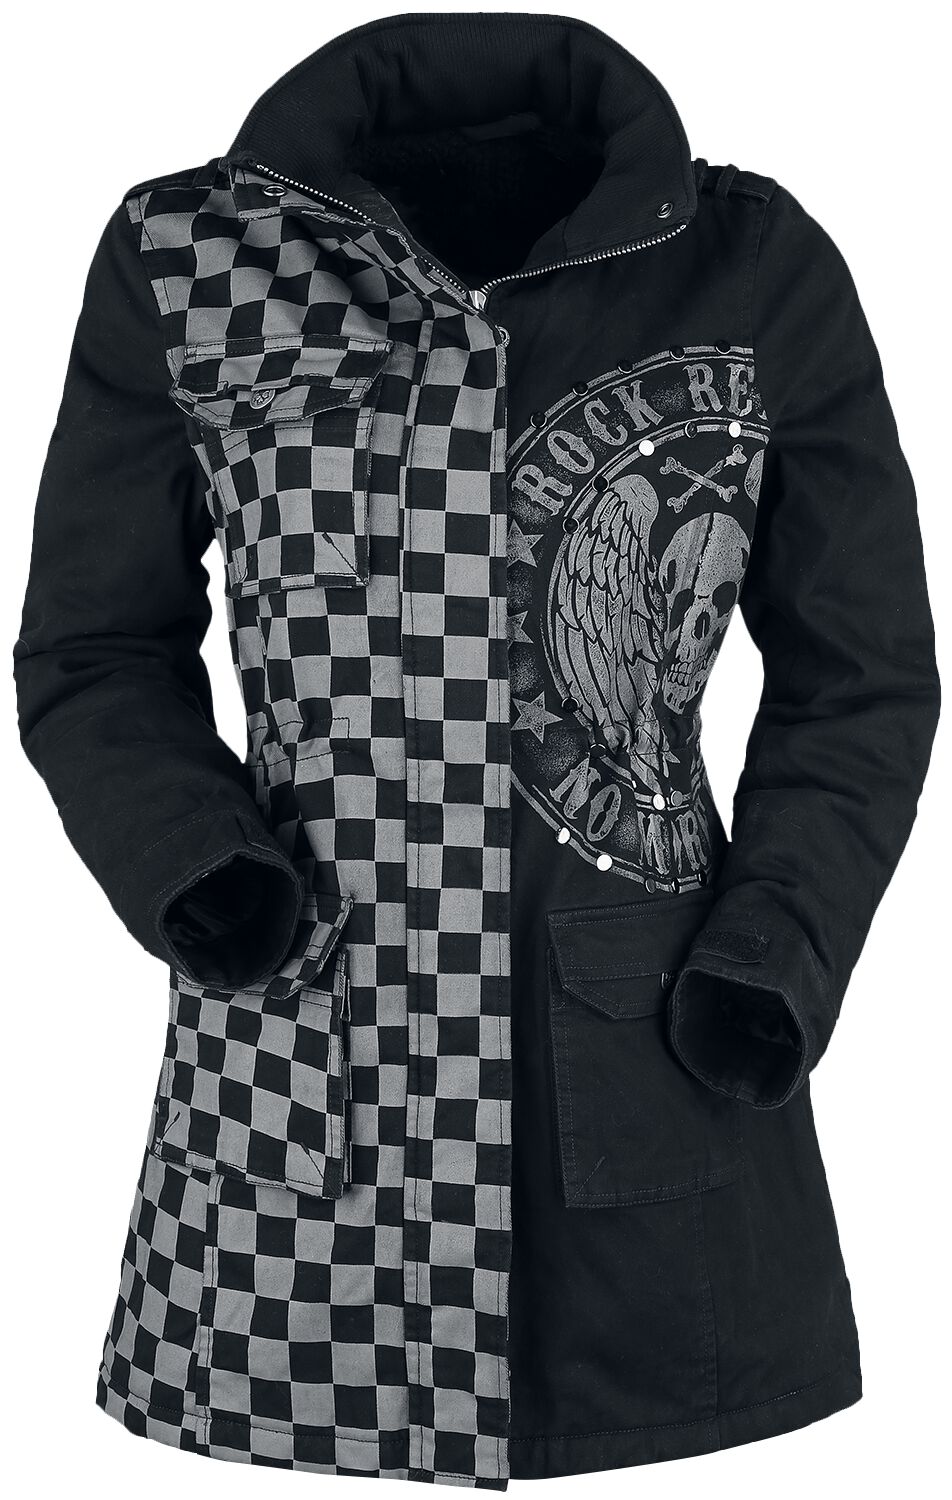 Rock Rebel by EMP schwarz/graue Jacke mit Nieten und Print Winterjacke grau schwarz in L von Rock Rebel by EMP